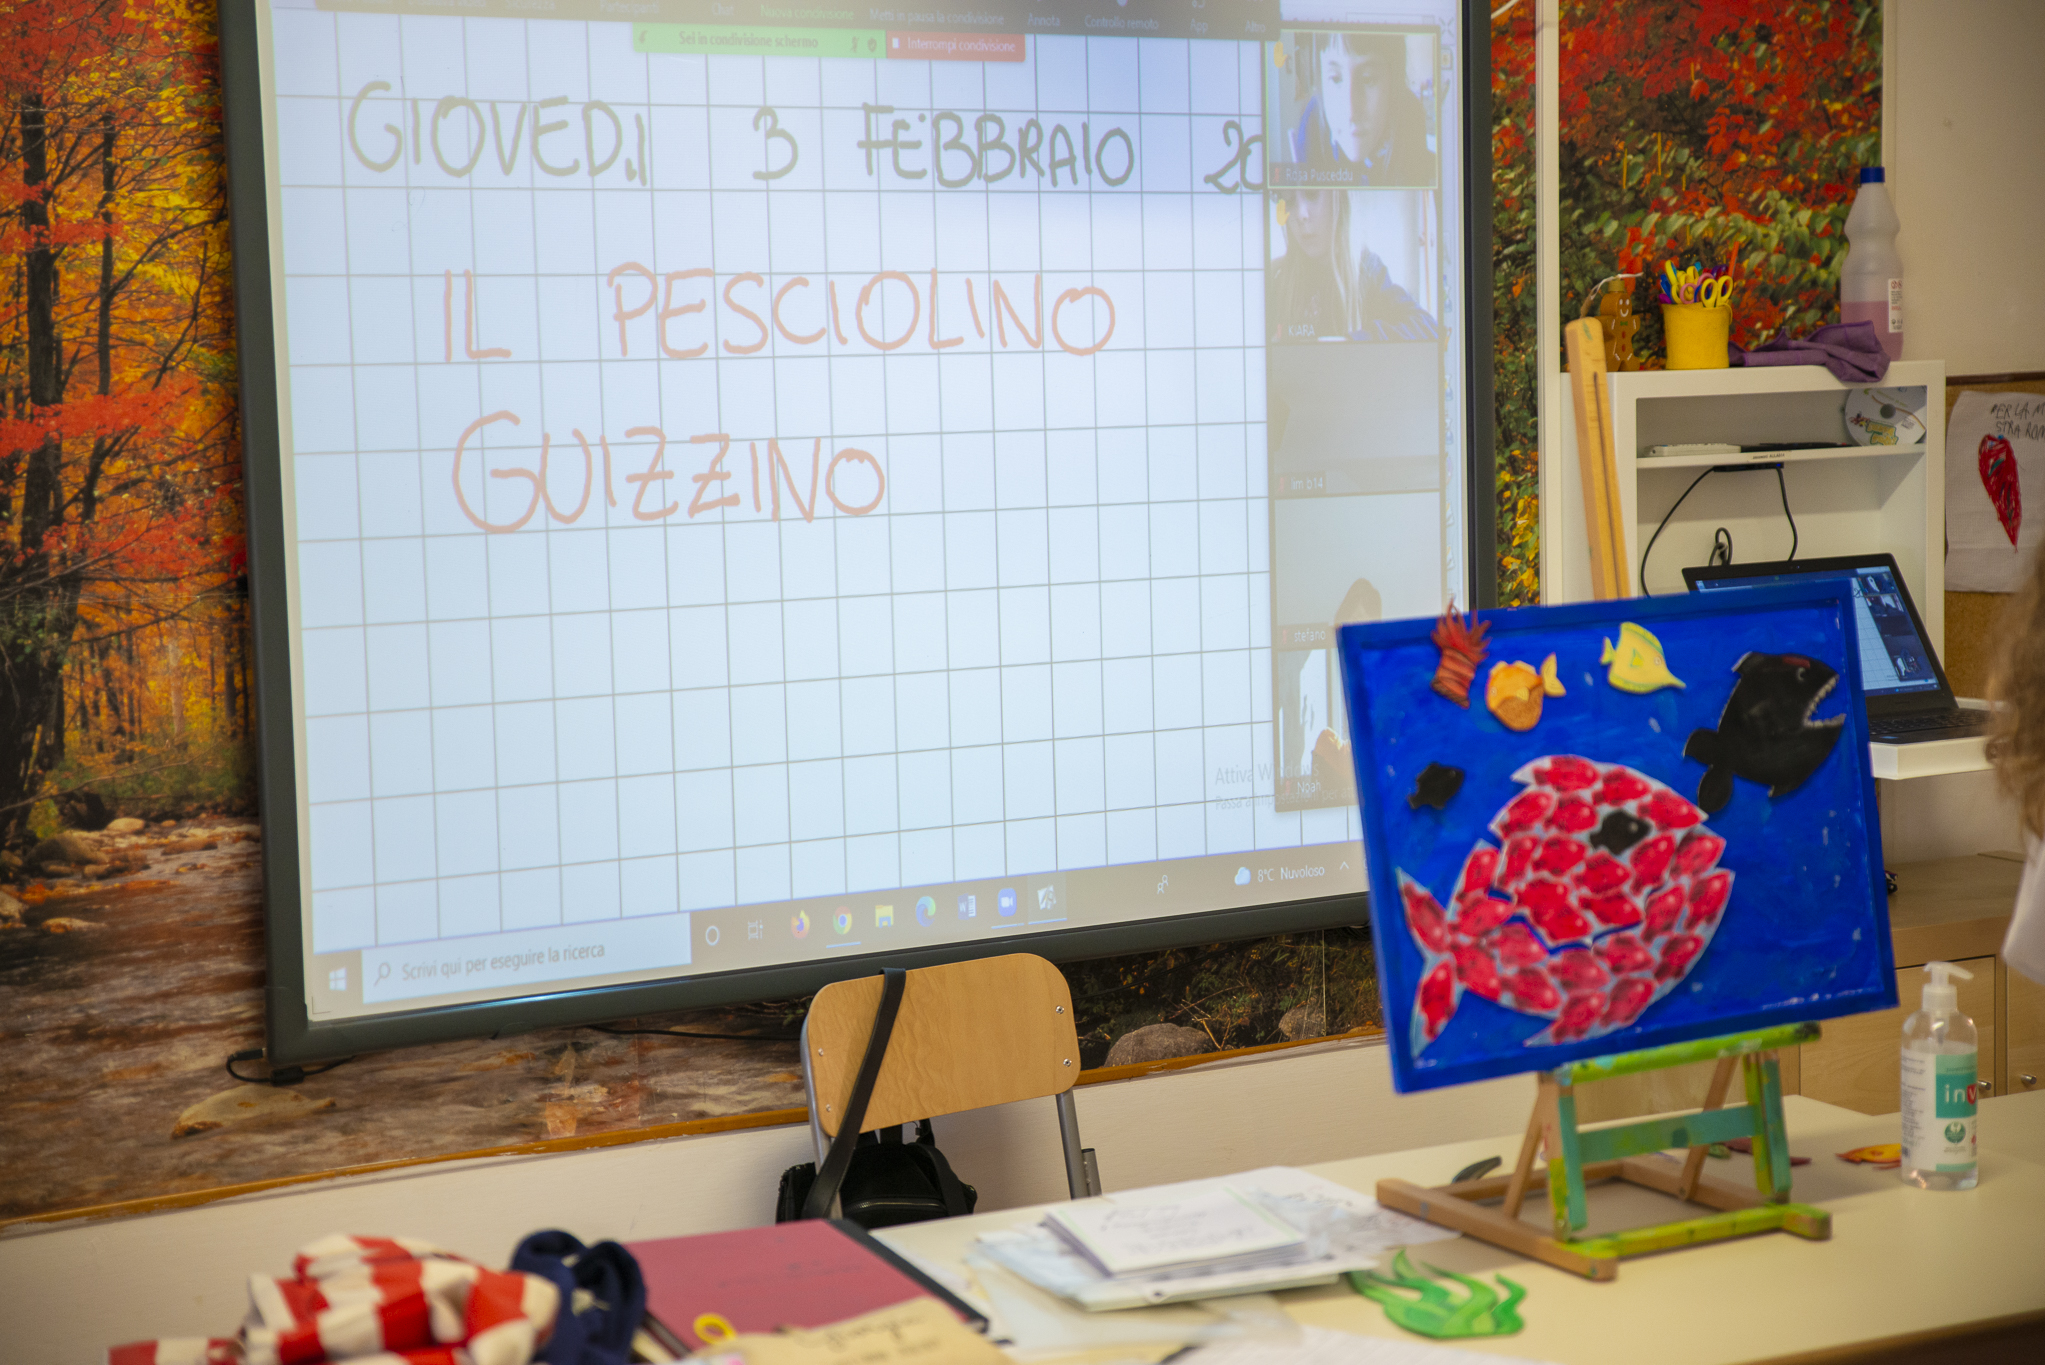 A scuola con Guizzino – Istituto Giovanni Paolo II